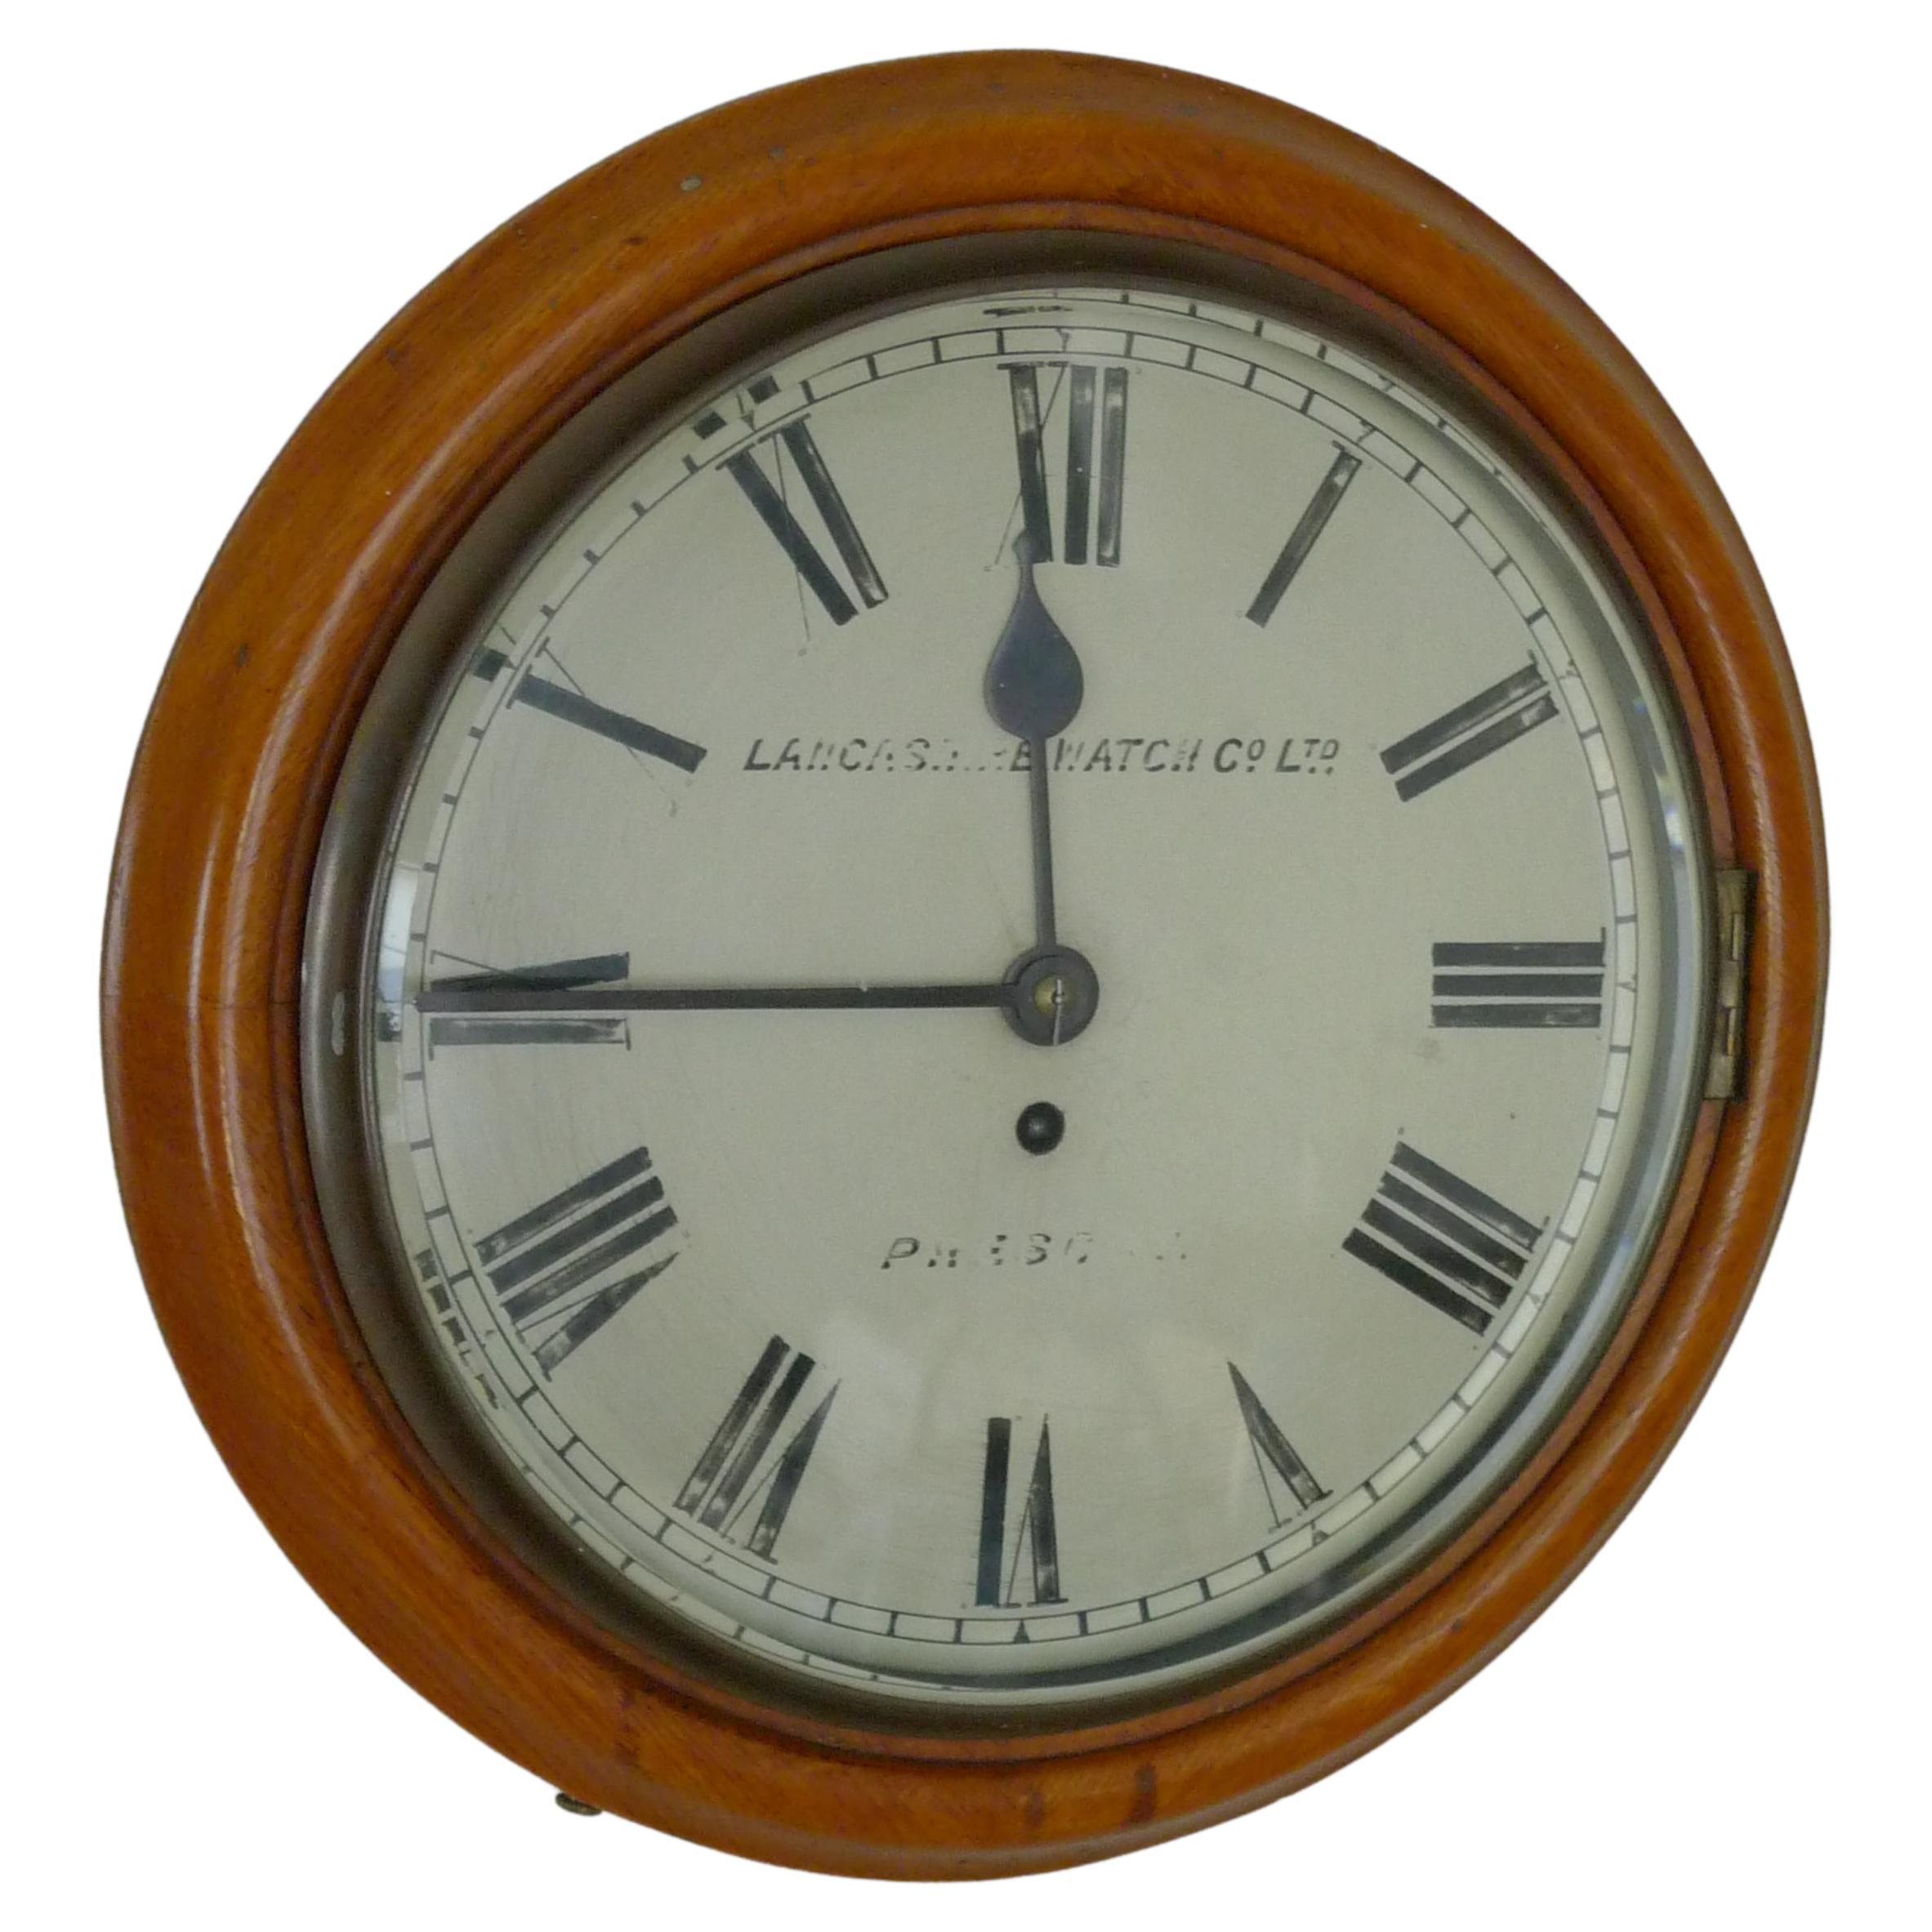 Horloge murale de Lancashire Watch Co. provenant d'une gare, fin du 19e siècle. Livraison gratuite en vente